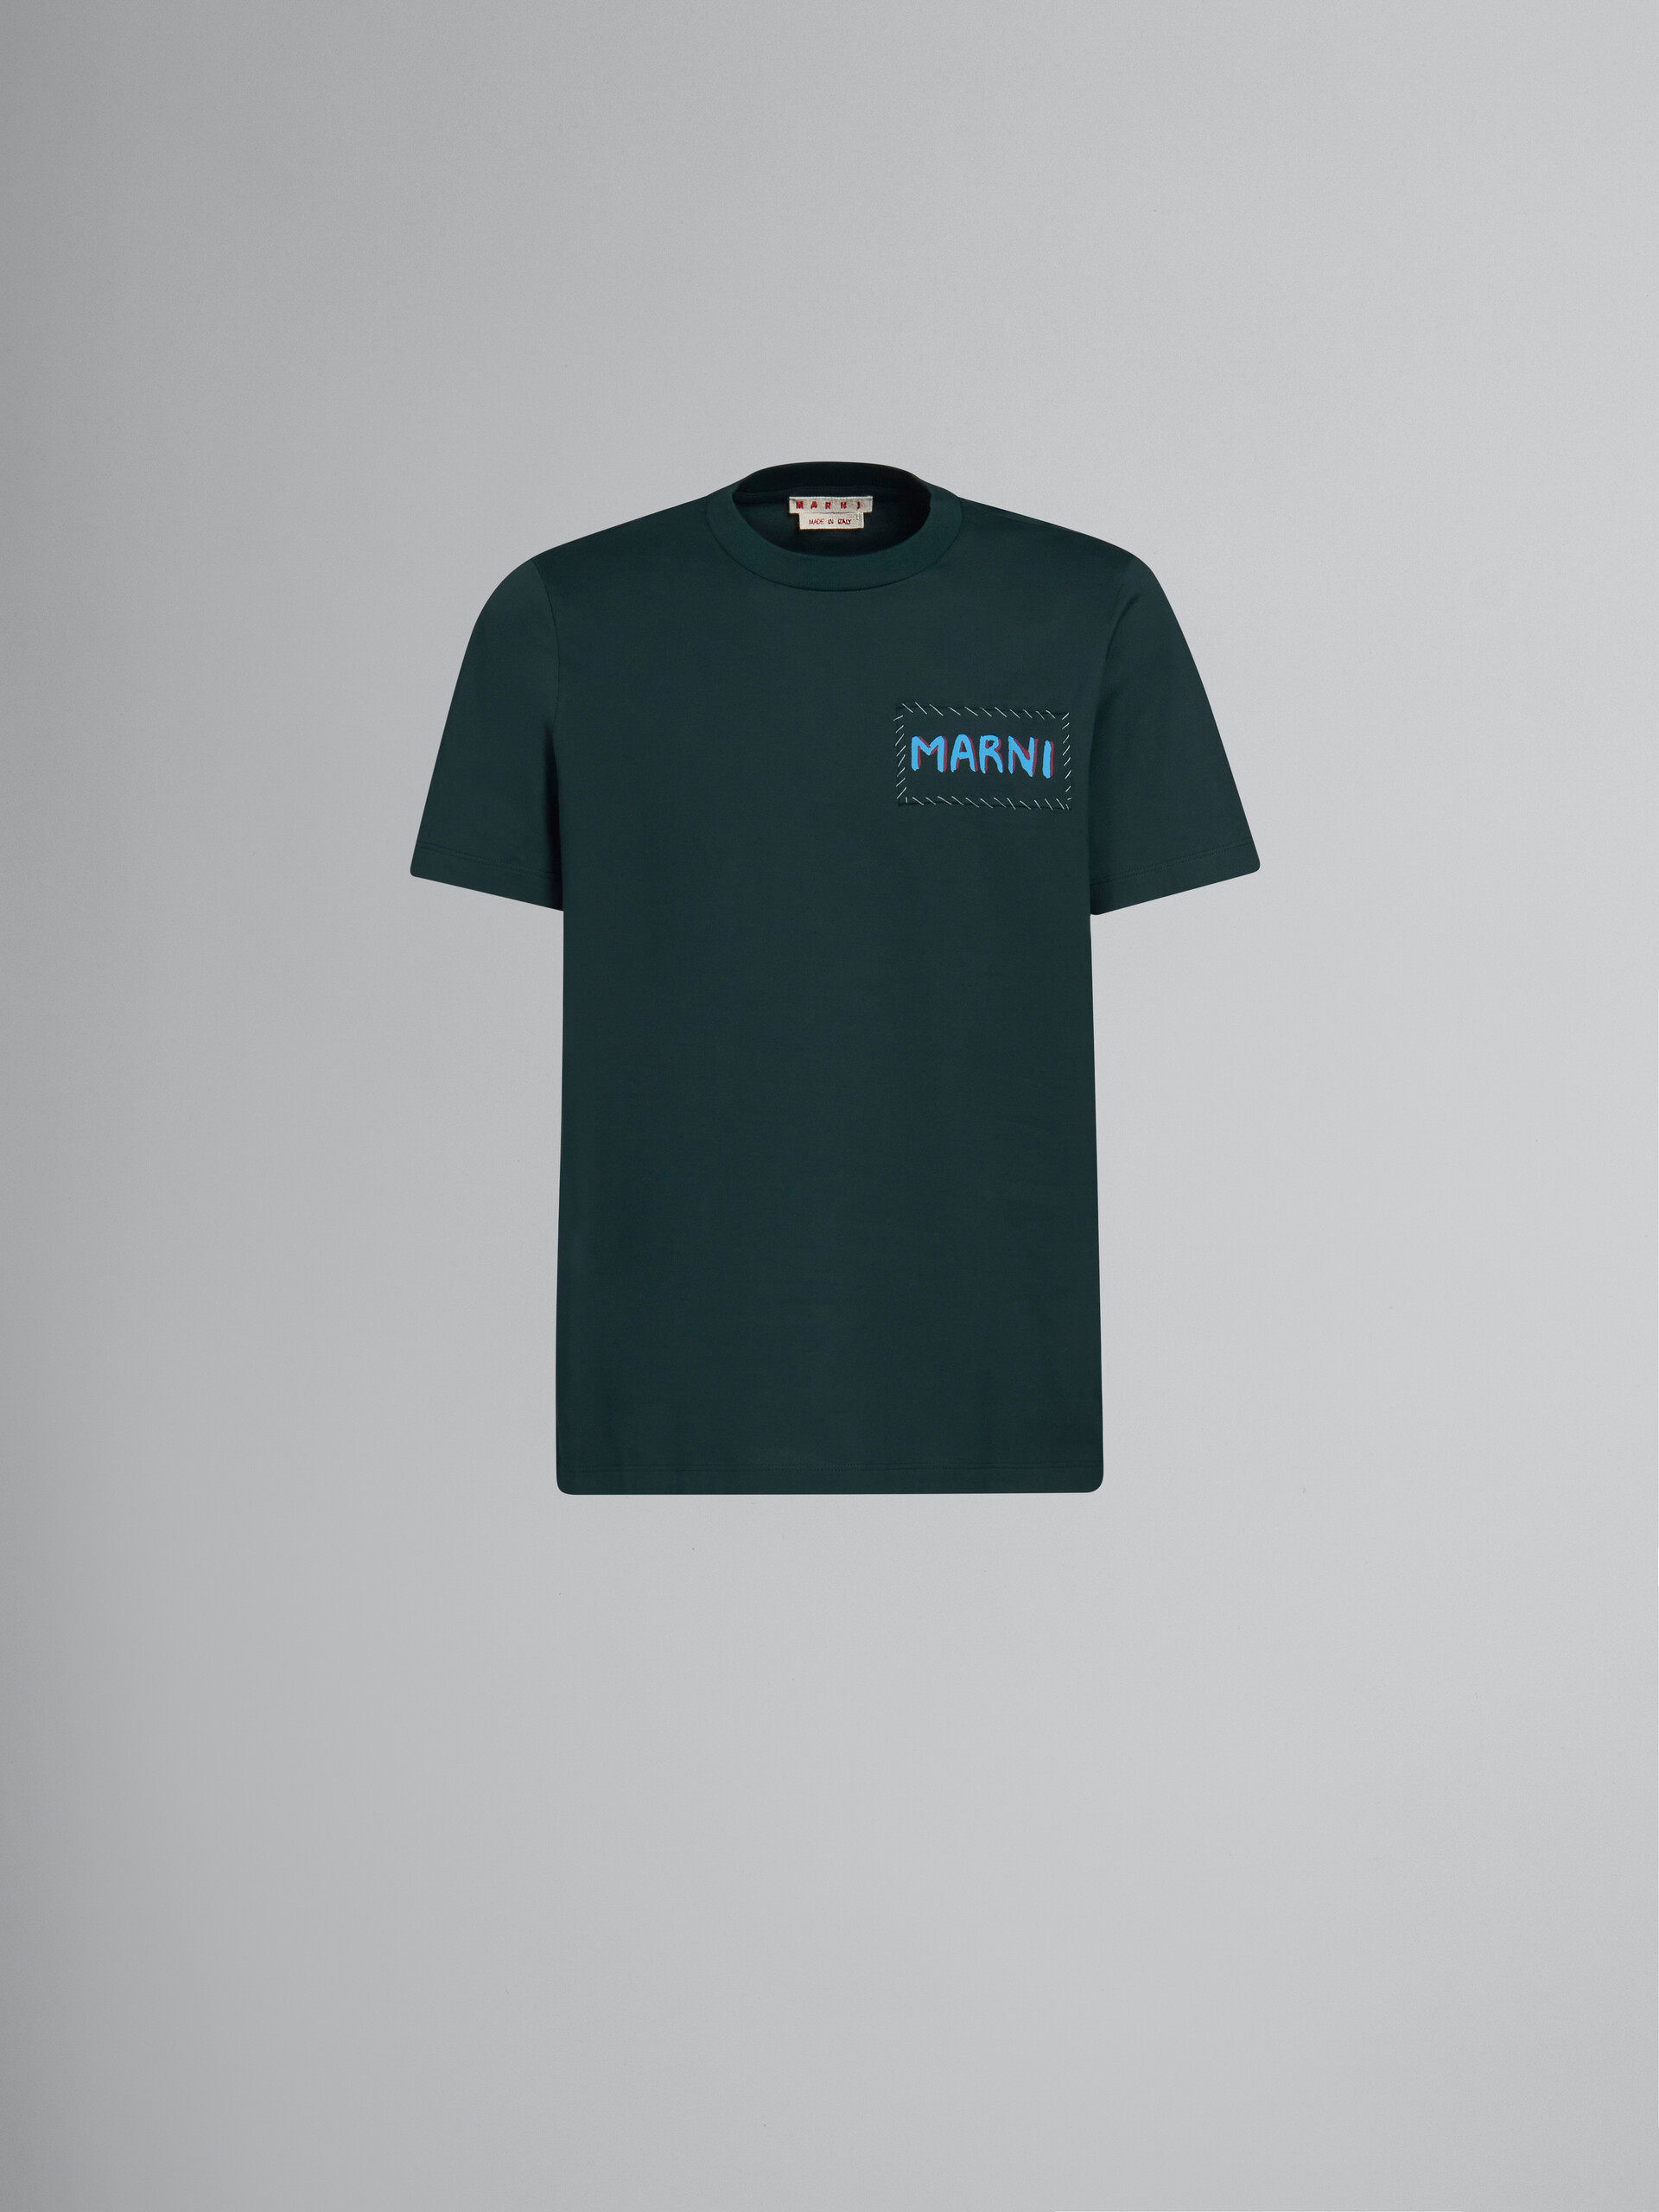 T-shirt in cotone biologico verde con applicazione Marni - T-shirt - Image 1